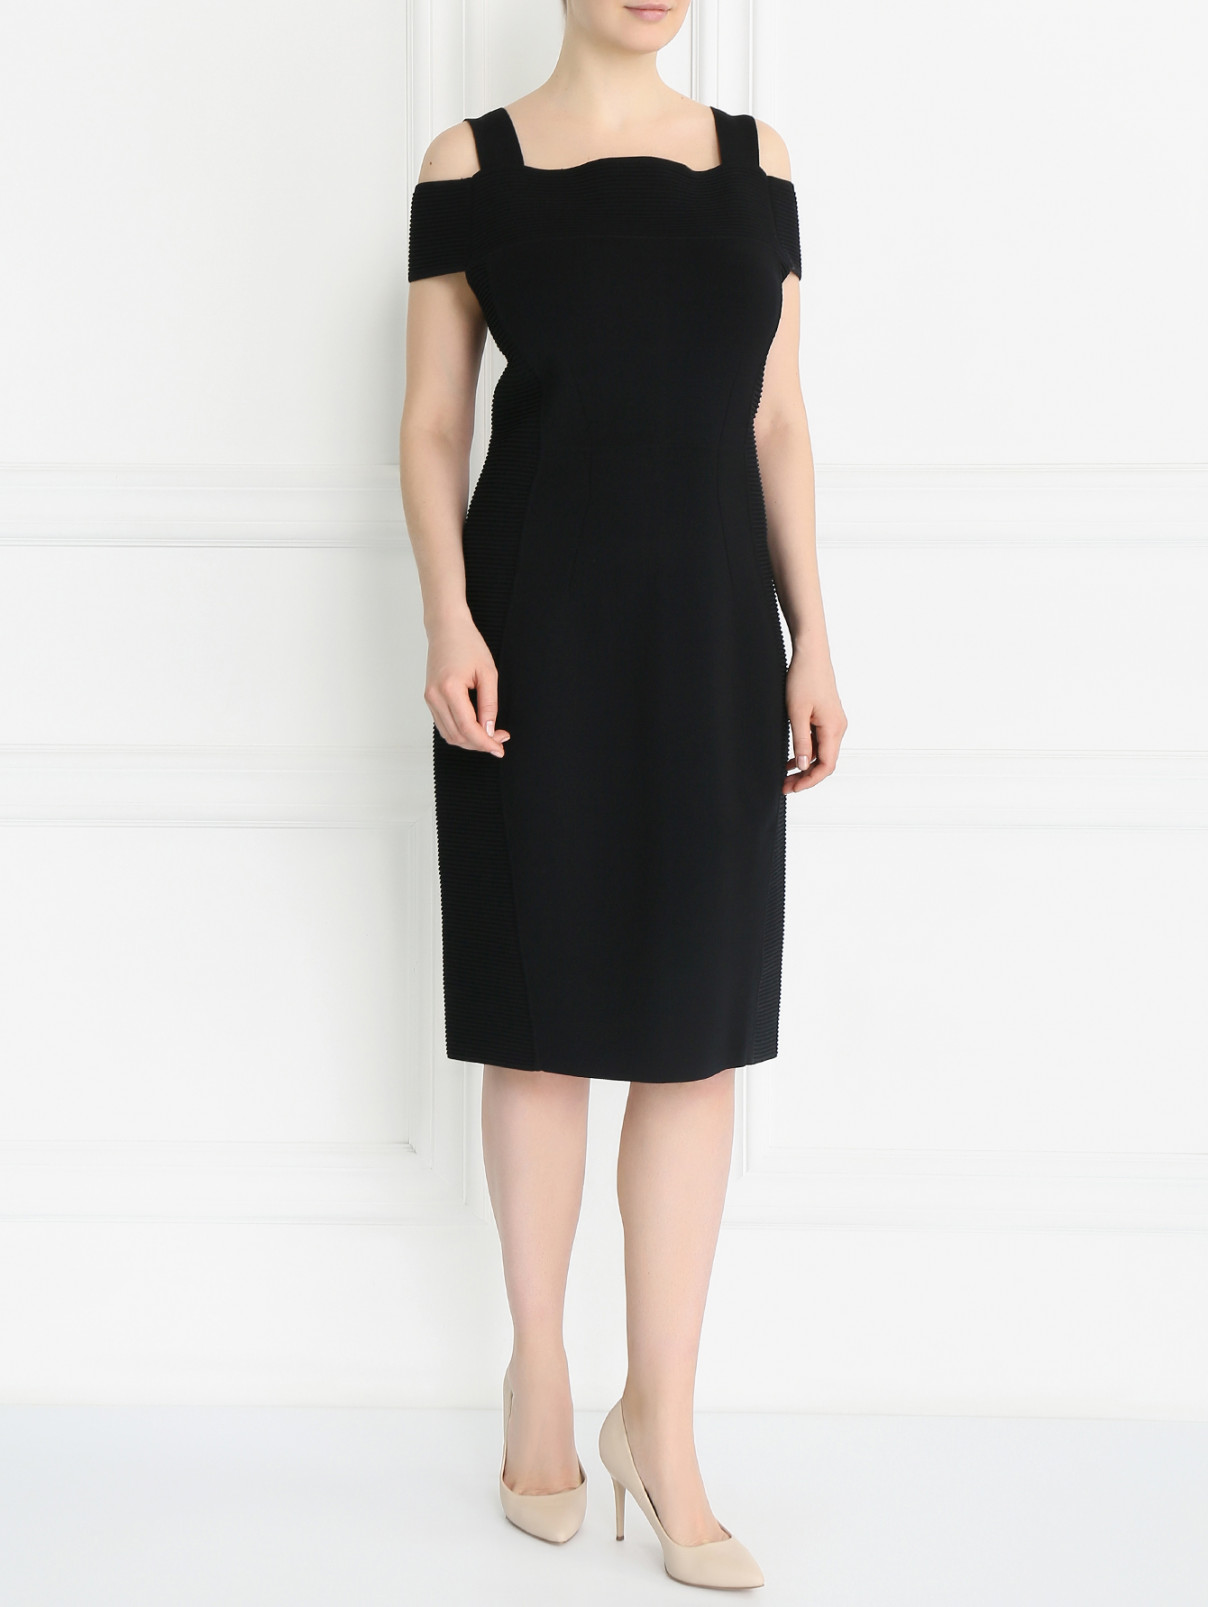 Платье-мини без рукавов Marina Rinaldi  –  Модель Общий вид  – Цвет:  Черный